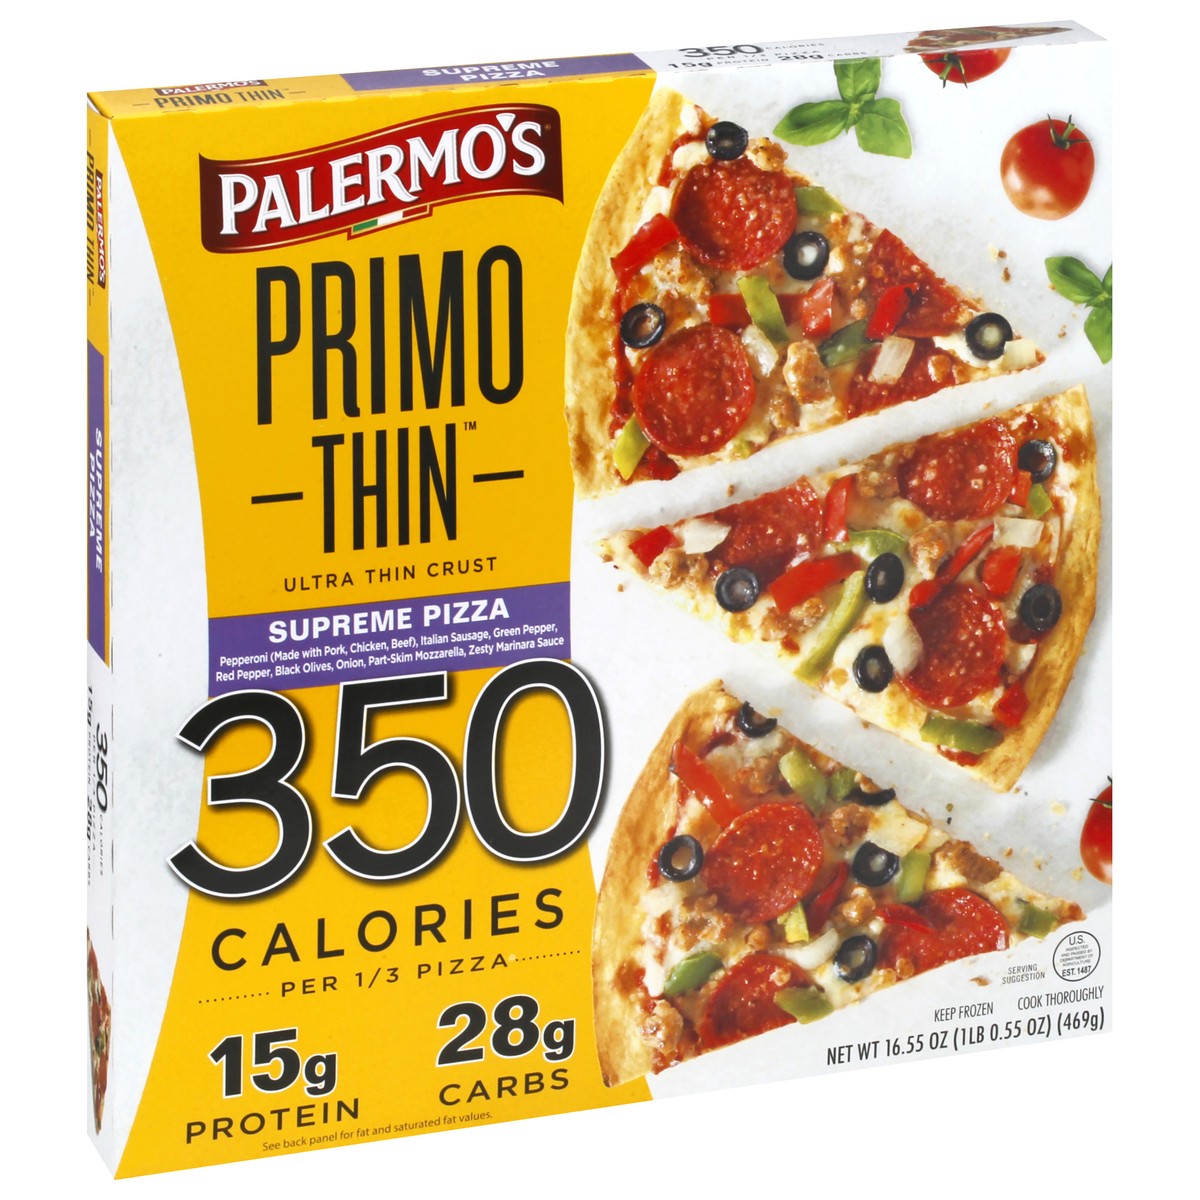 slide 2 of 9, Palermo's Primo Thin Ultra Thin Crust Supreme Pizza 16.55 oz, 16.55 oz